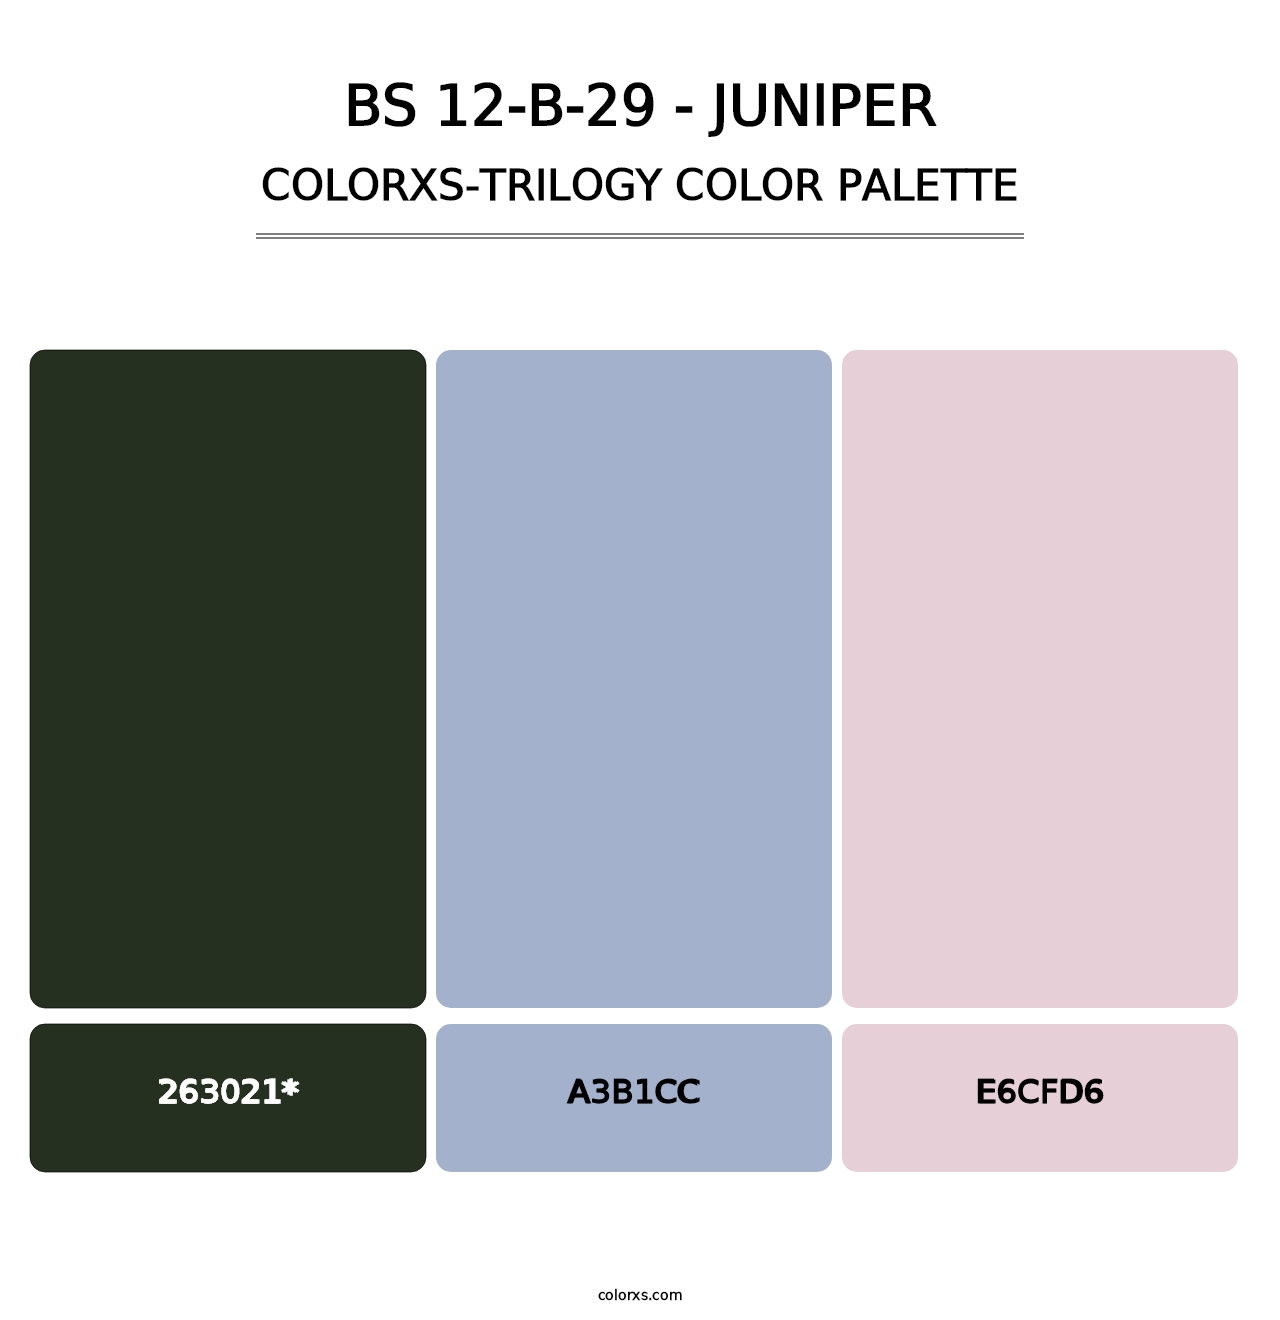 BS 12-B-29 - Juniper - Colorxs Trilogy Palette